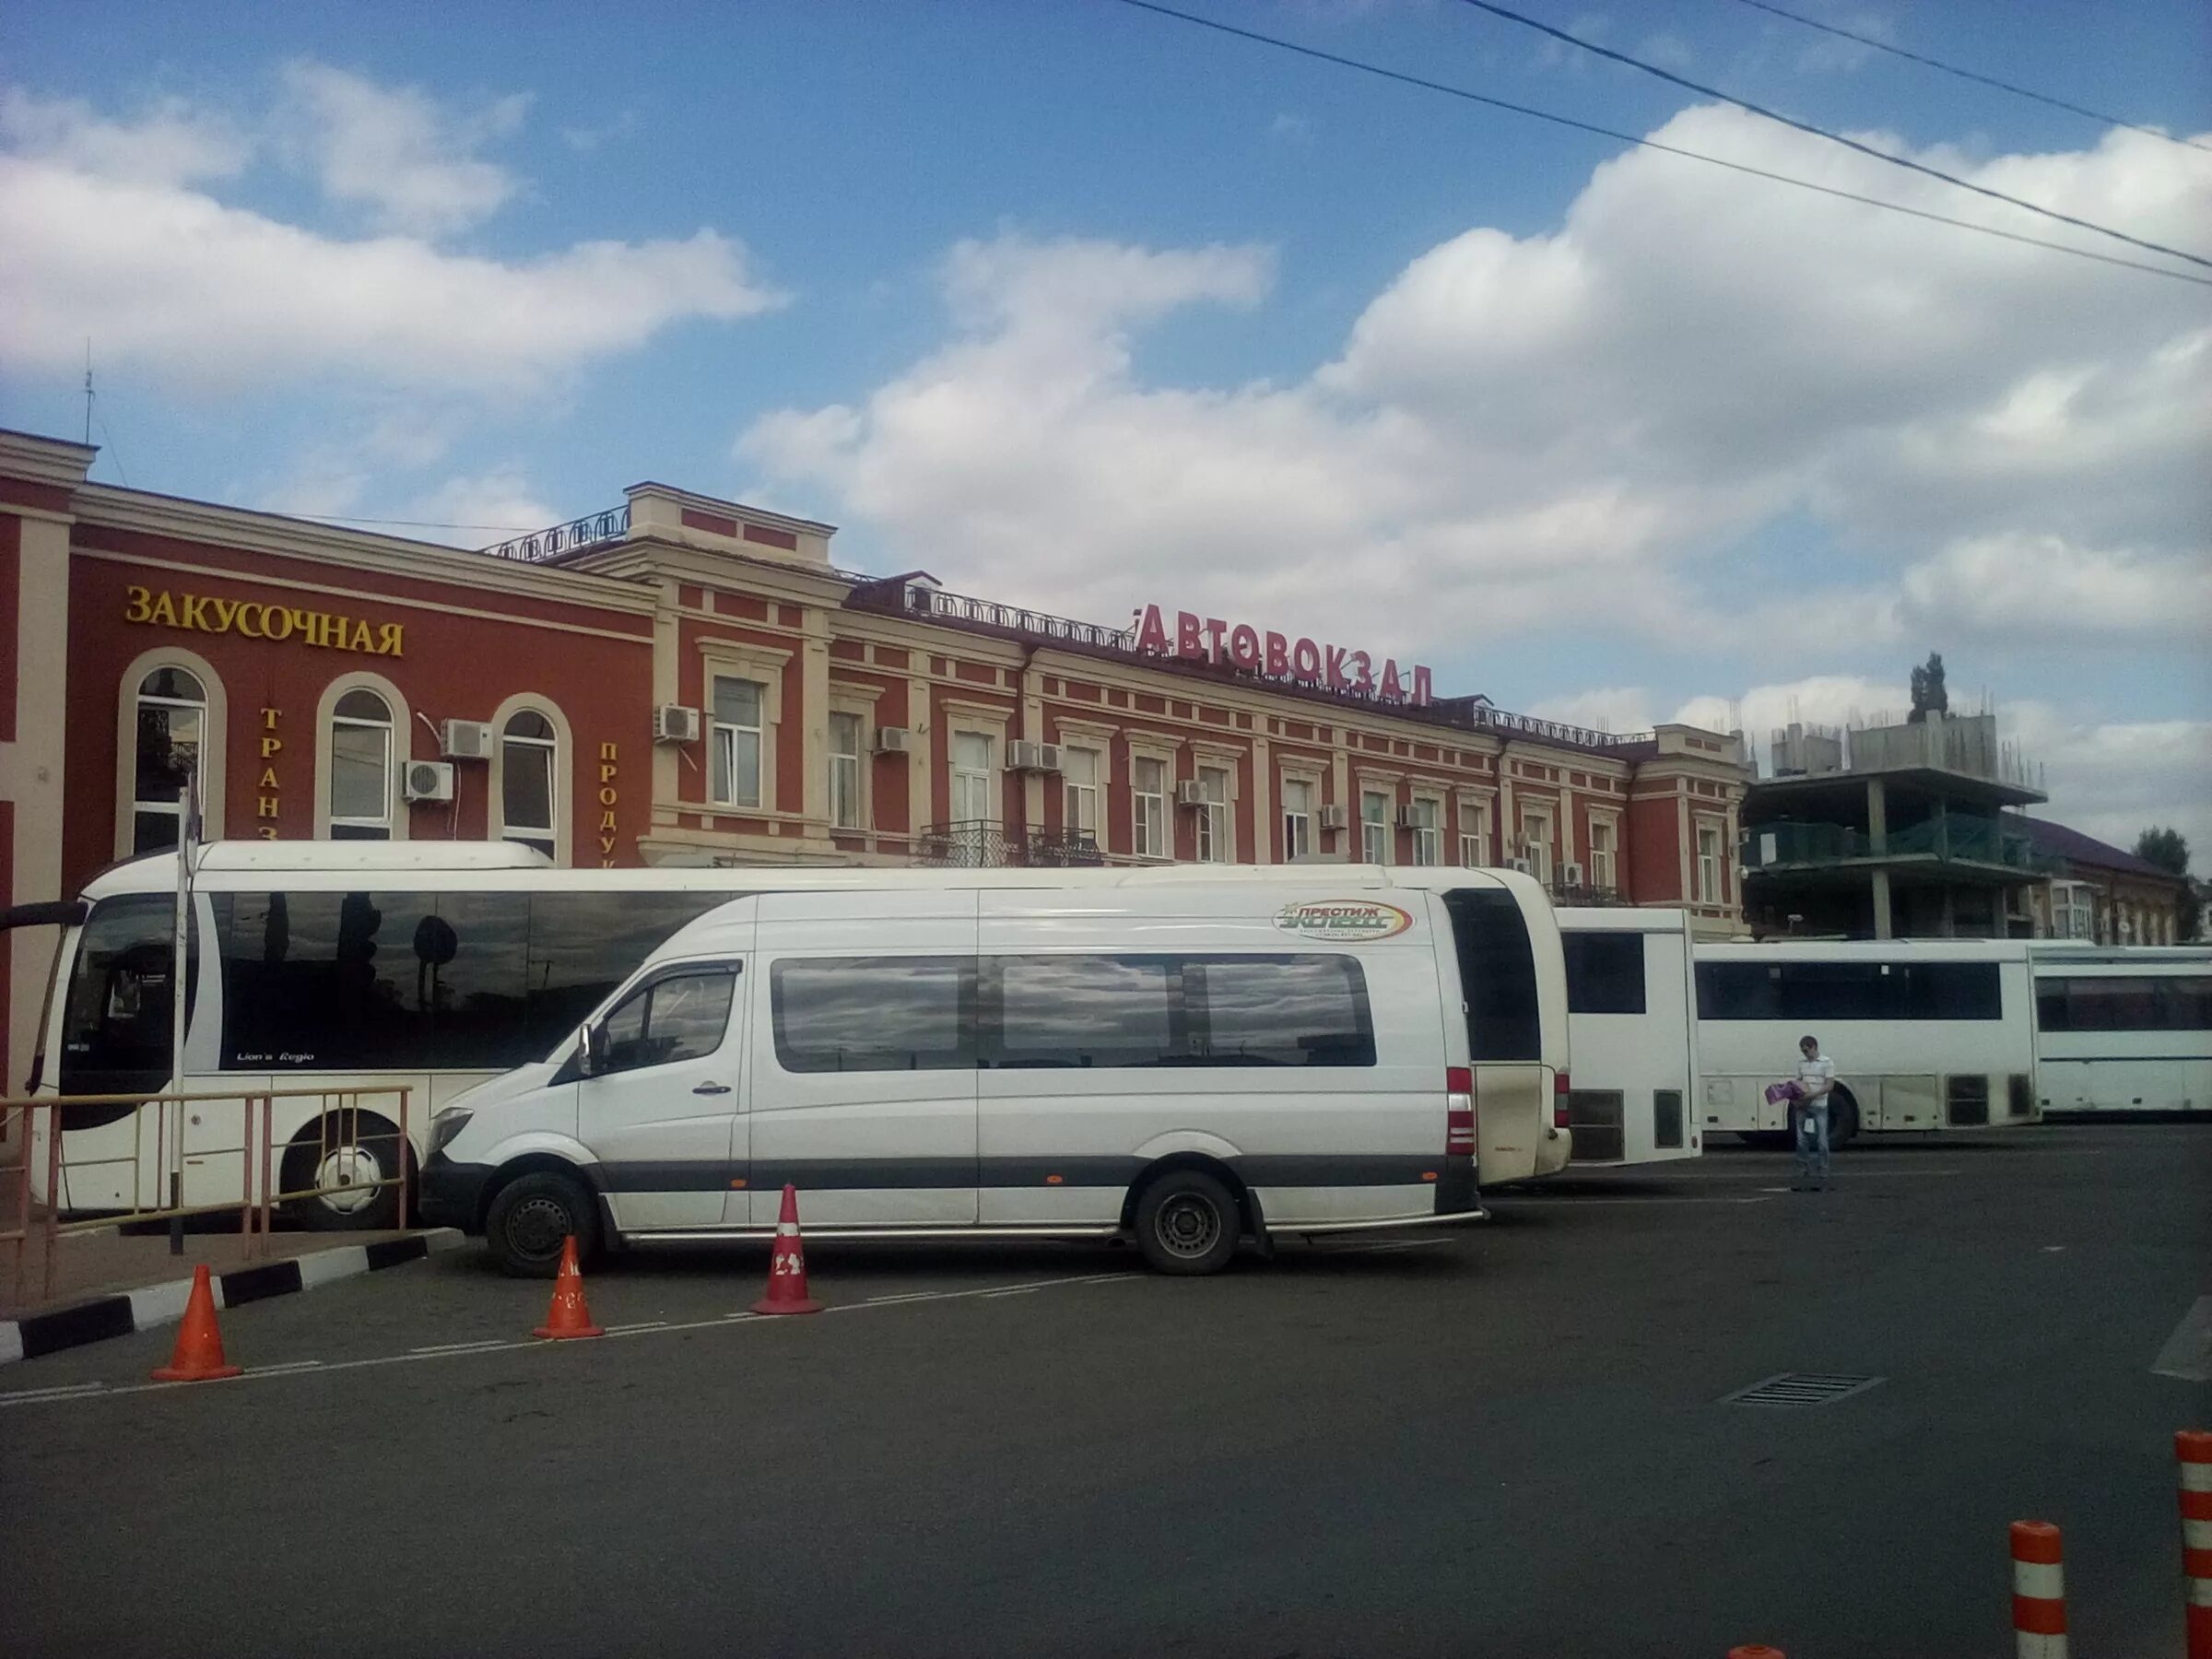 Автовокзал первый автобус. Краснодар-1 (Центральный автовокзал). Краснодар вокзал автовокзал. Автостанция Краснодар 1. Вокзал Краснодар 1 автовокзал.